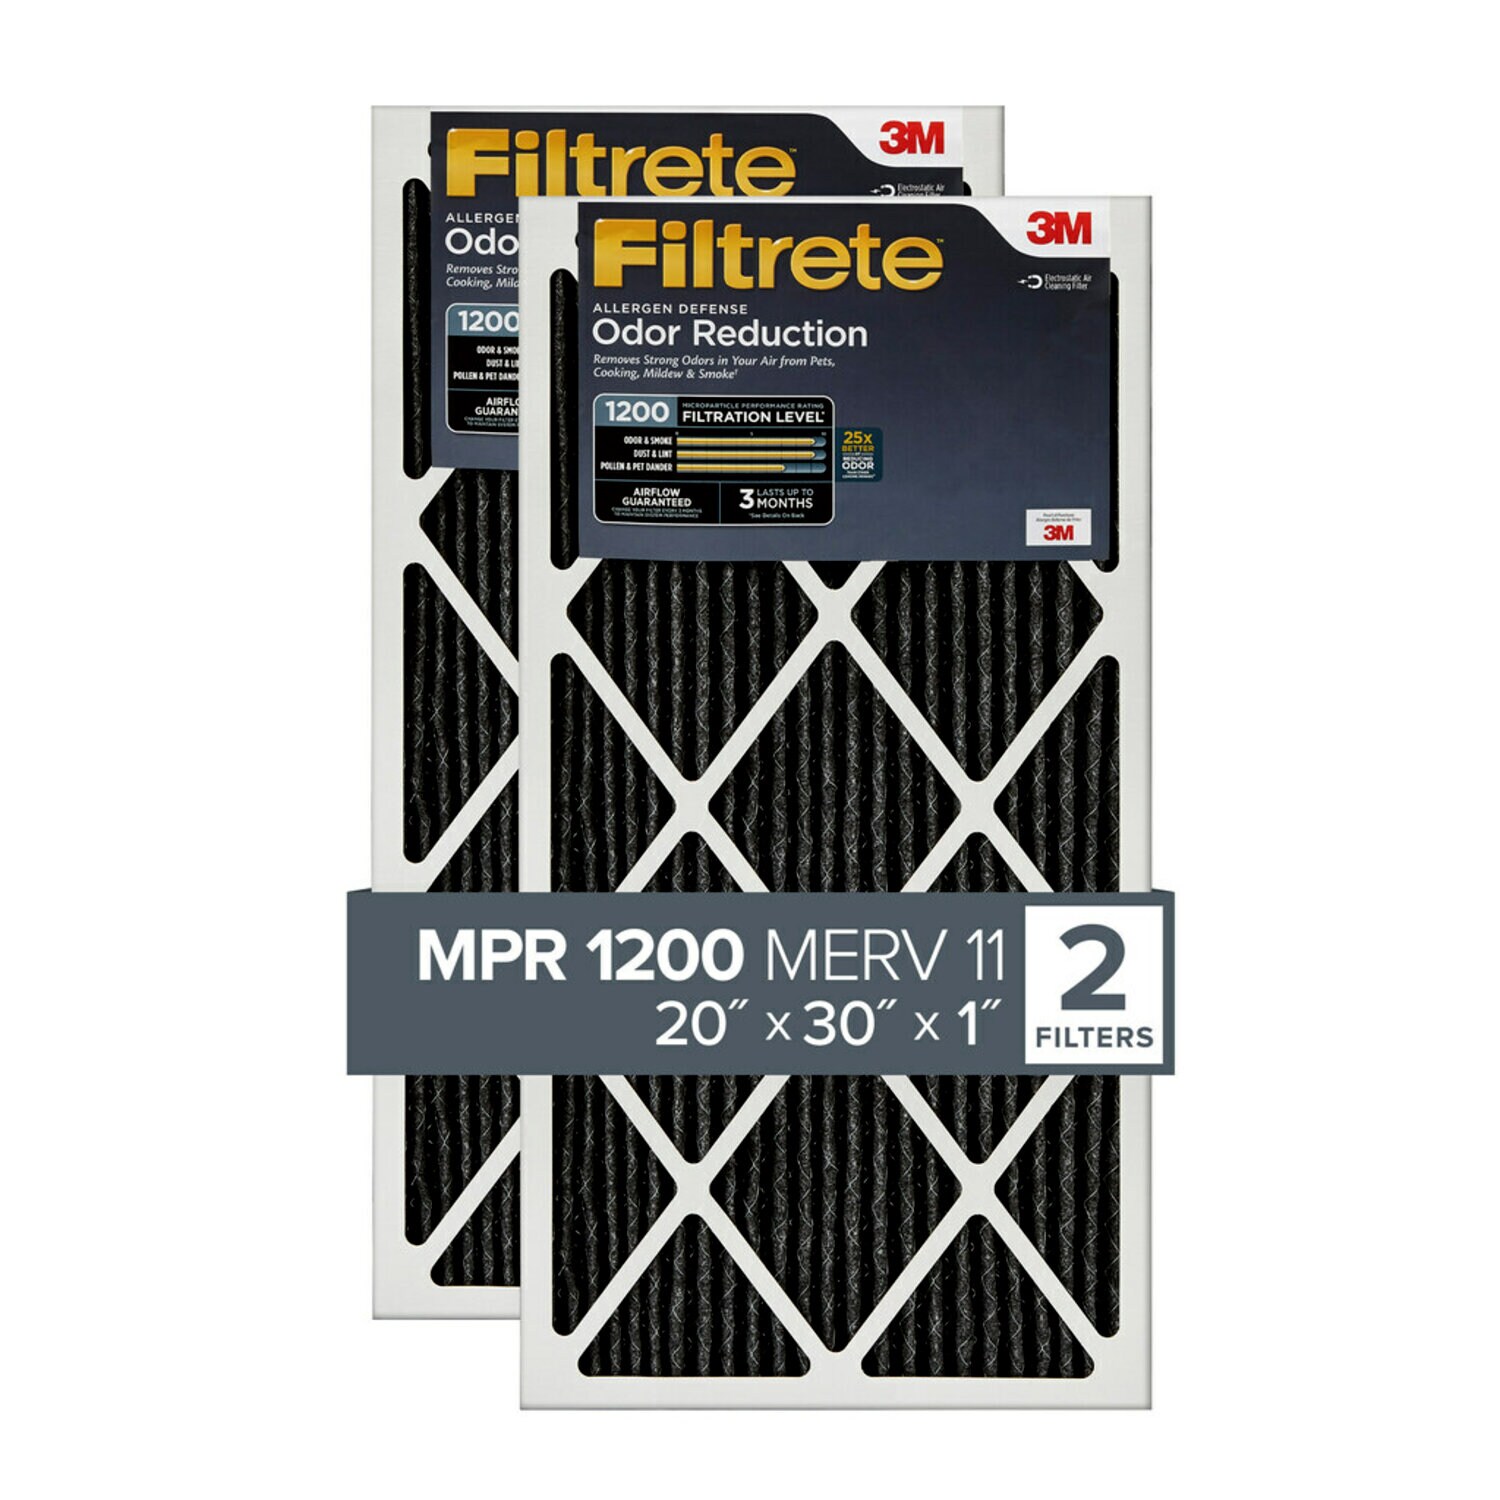 7100212407 - Filtrete Allergen Defense Odor Reduction Filter AOR22-2PK-1E, 20 in x 30 in x 1 in (50.8 cm x 76.2 cm x 2.5 cm)